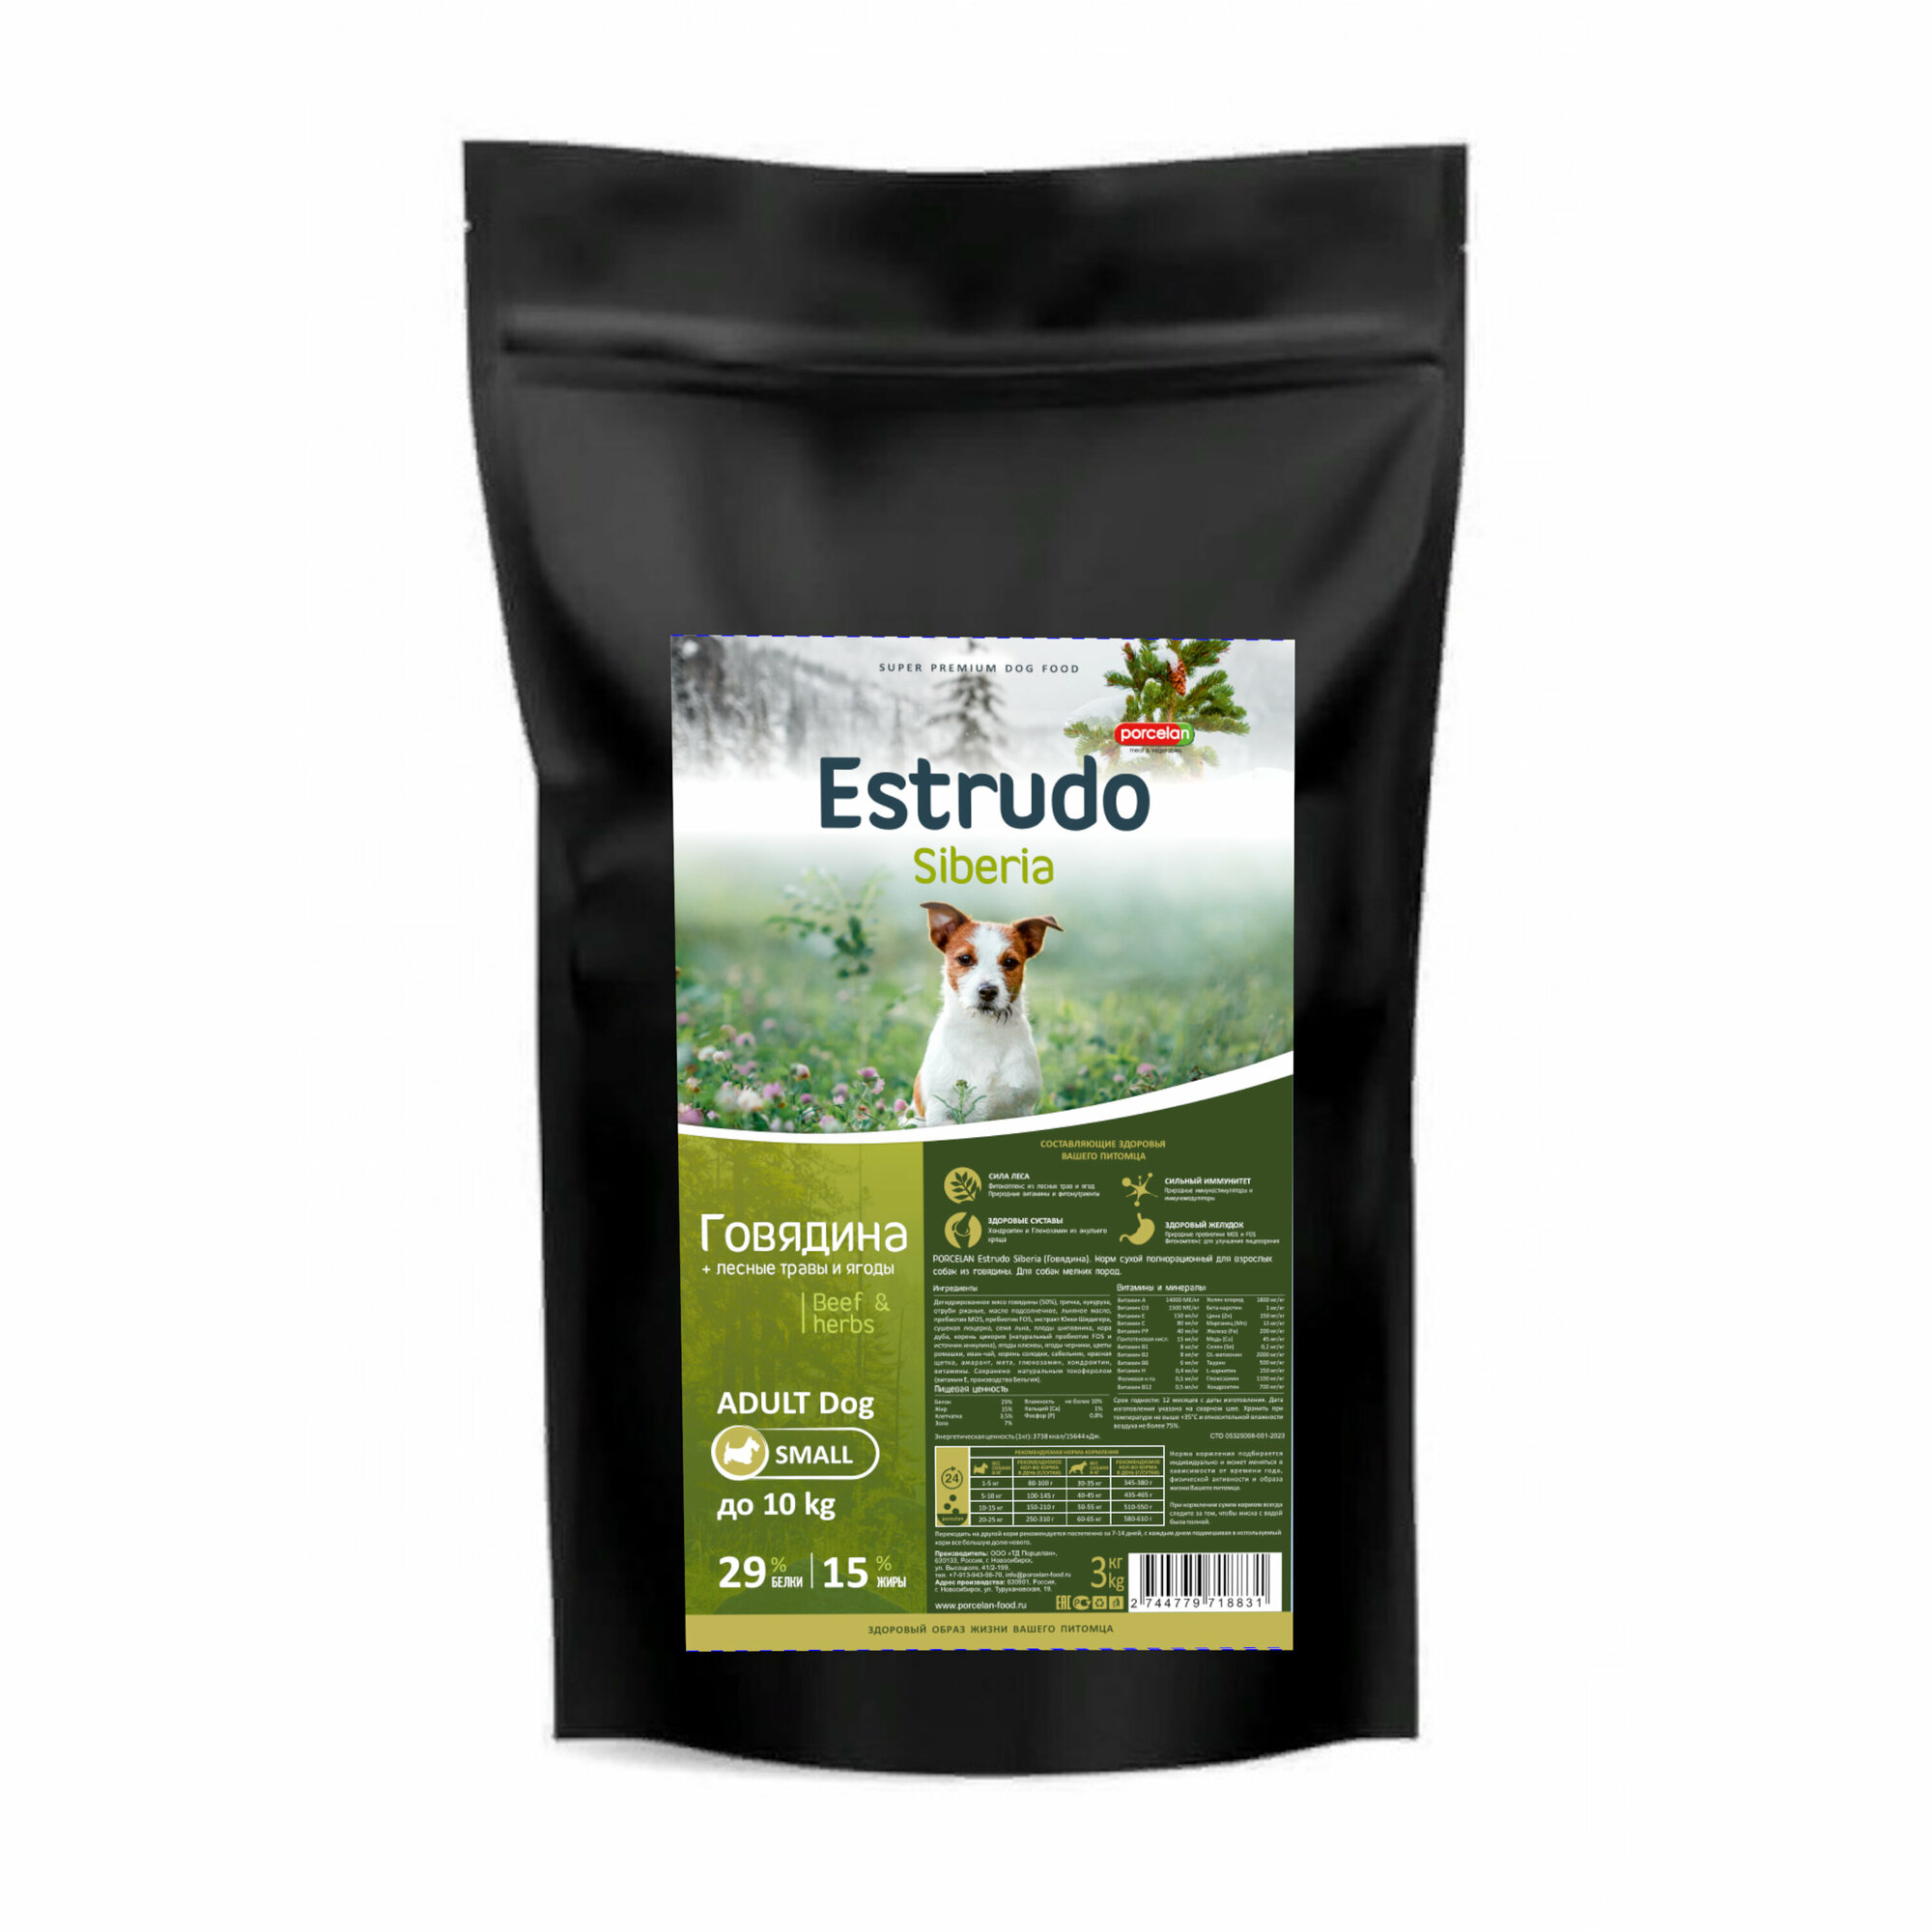 Сухой корм Estrudo Siberia (Говядина + лесные травы) для взрослых собак мелких пород, 3 кг